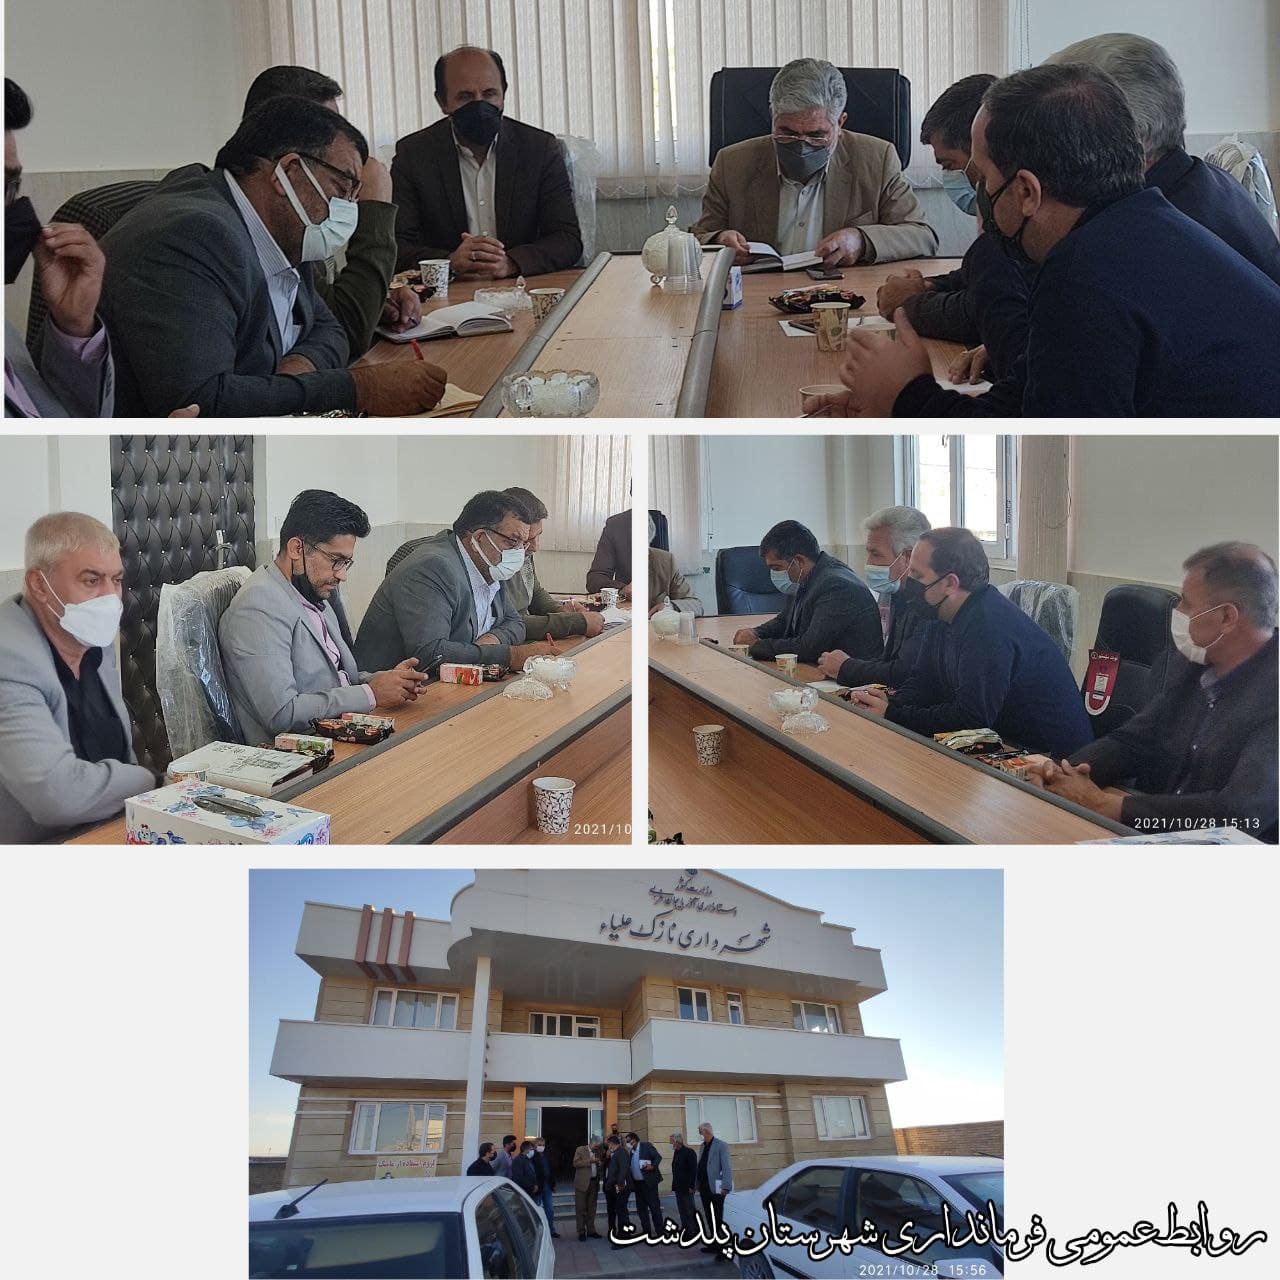 دیدار اعضای شورای شهر نازک علیا با نماینده مردم در مجلس شورا